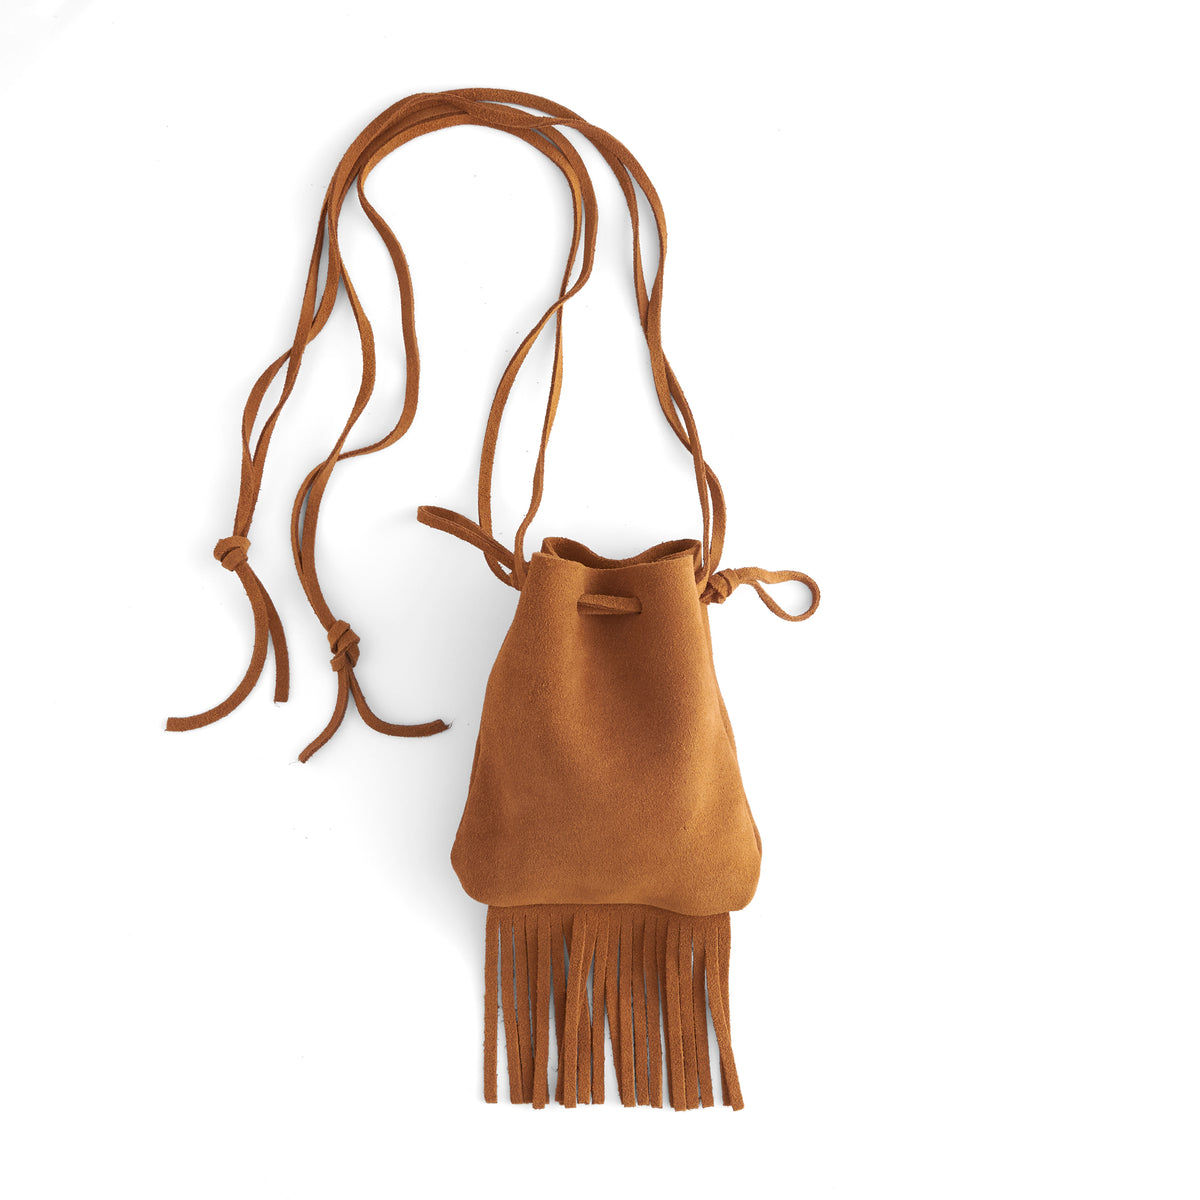 Light Brown Leather Fanny Pack Adjustable Strap Travel Hip Bum bag Purse  wallet | eBay